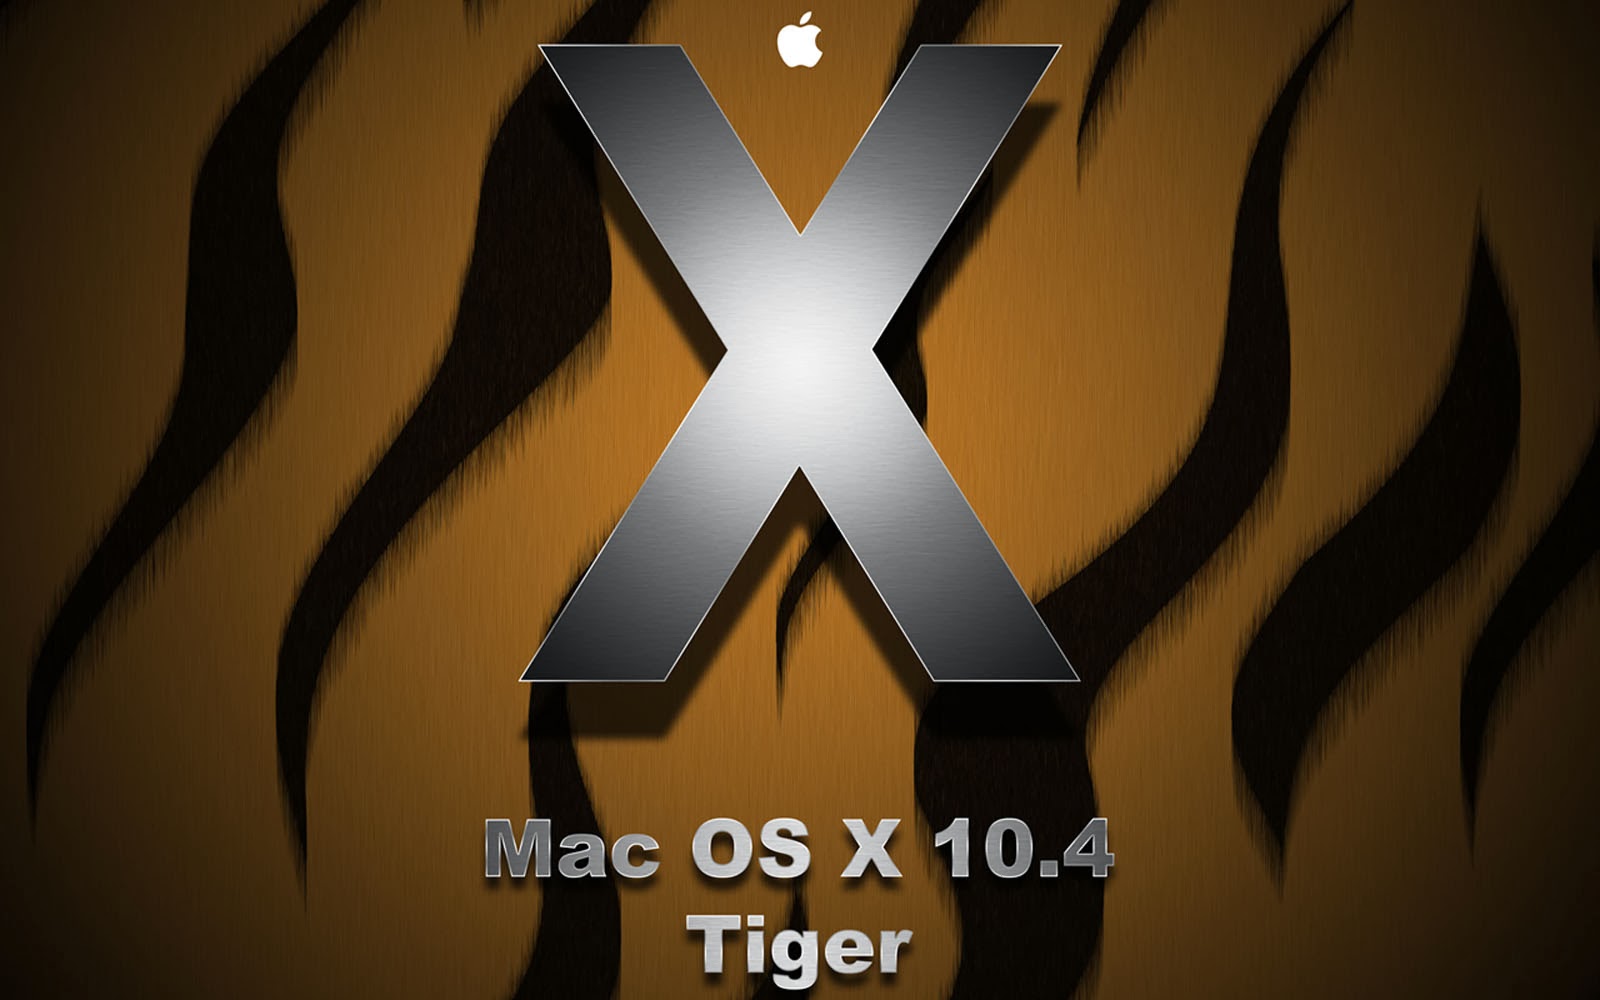 Wallpaper Mac Os X Tiger